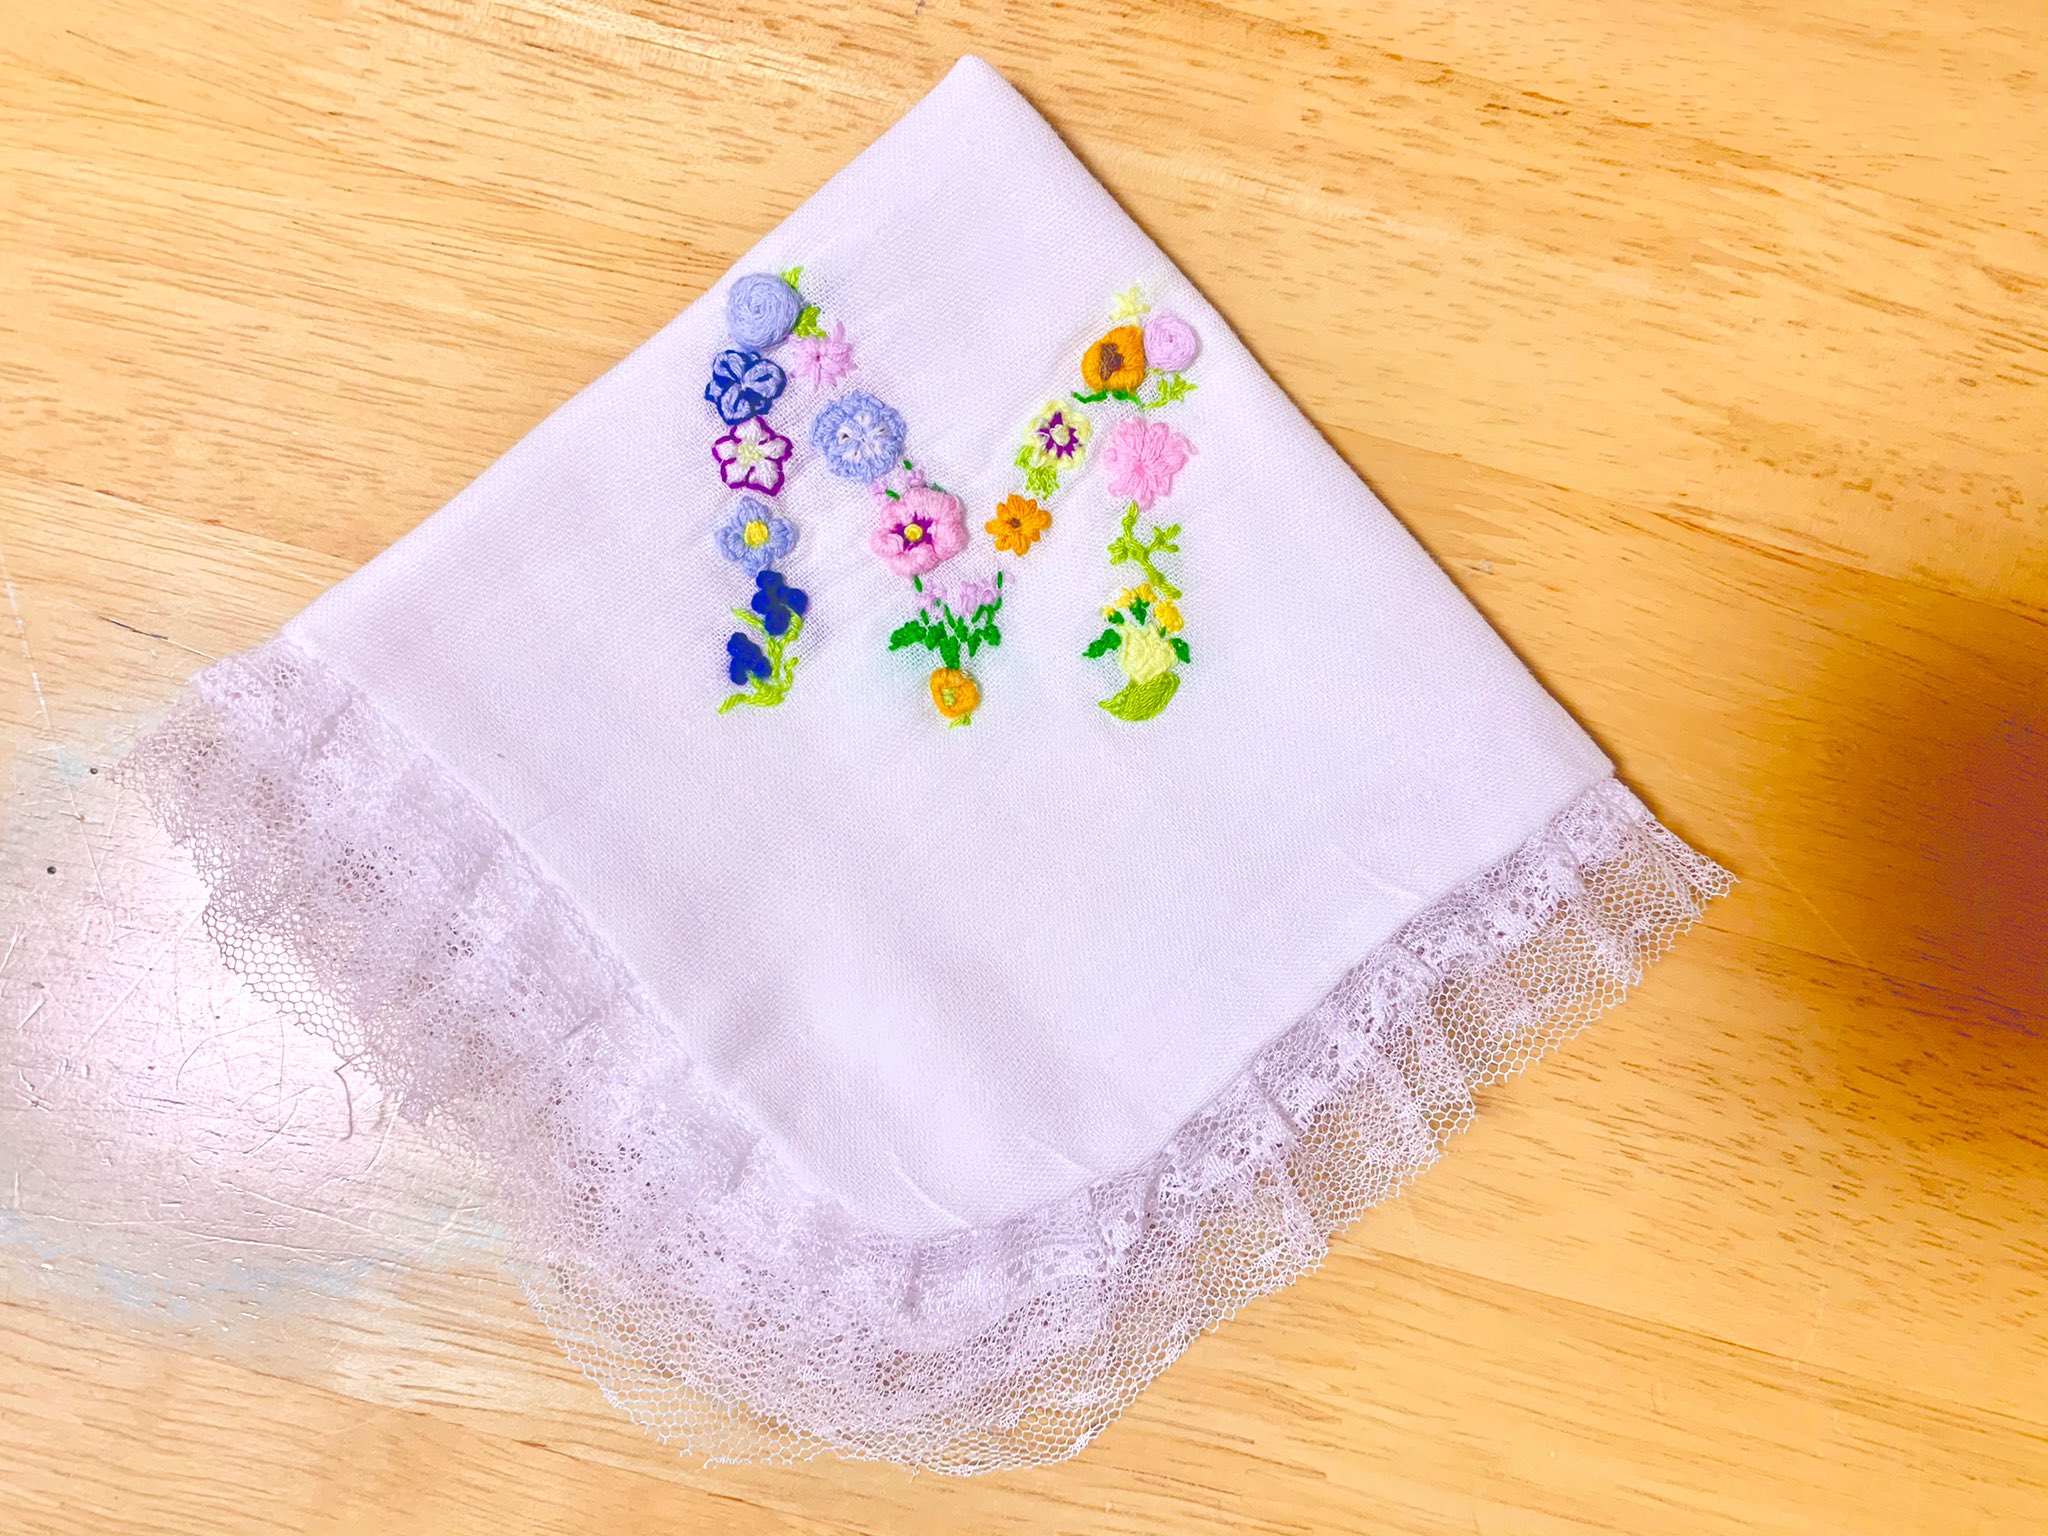 K Miho 自分専用 ハンカチを作りました 刺繍は初めてだったのですが Miho みほ のmをお花で 刺繍 してみました ちょっと歪な所もありますが 愛着が湧いてお気に入りです ๑ ᄇ ๑ 刺繍 手作りハンカチ 材料100均 T Co